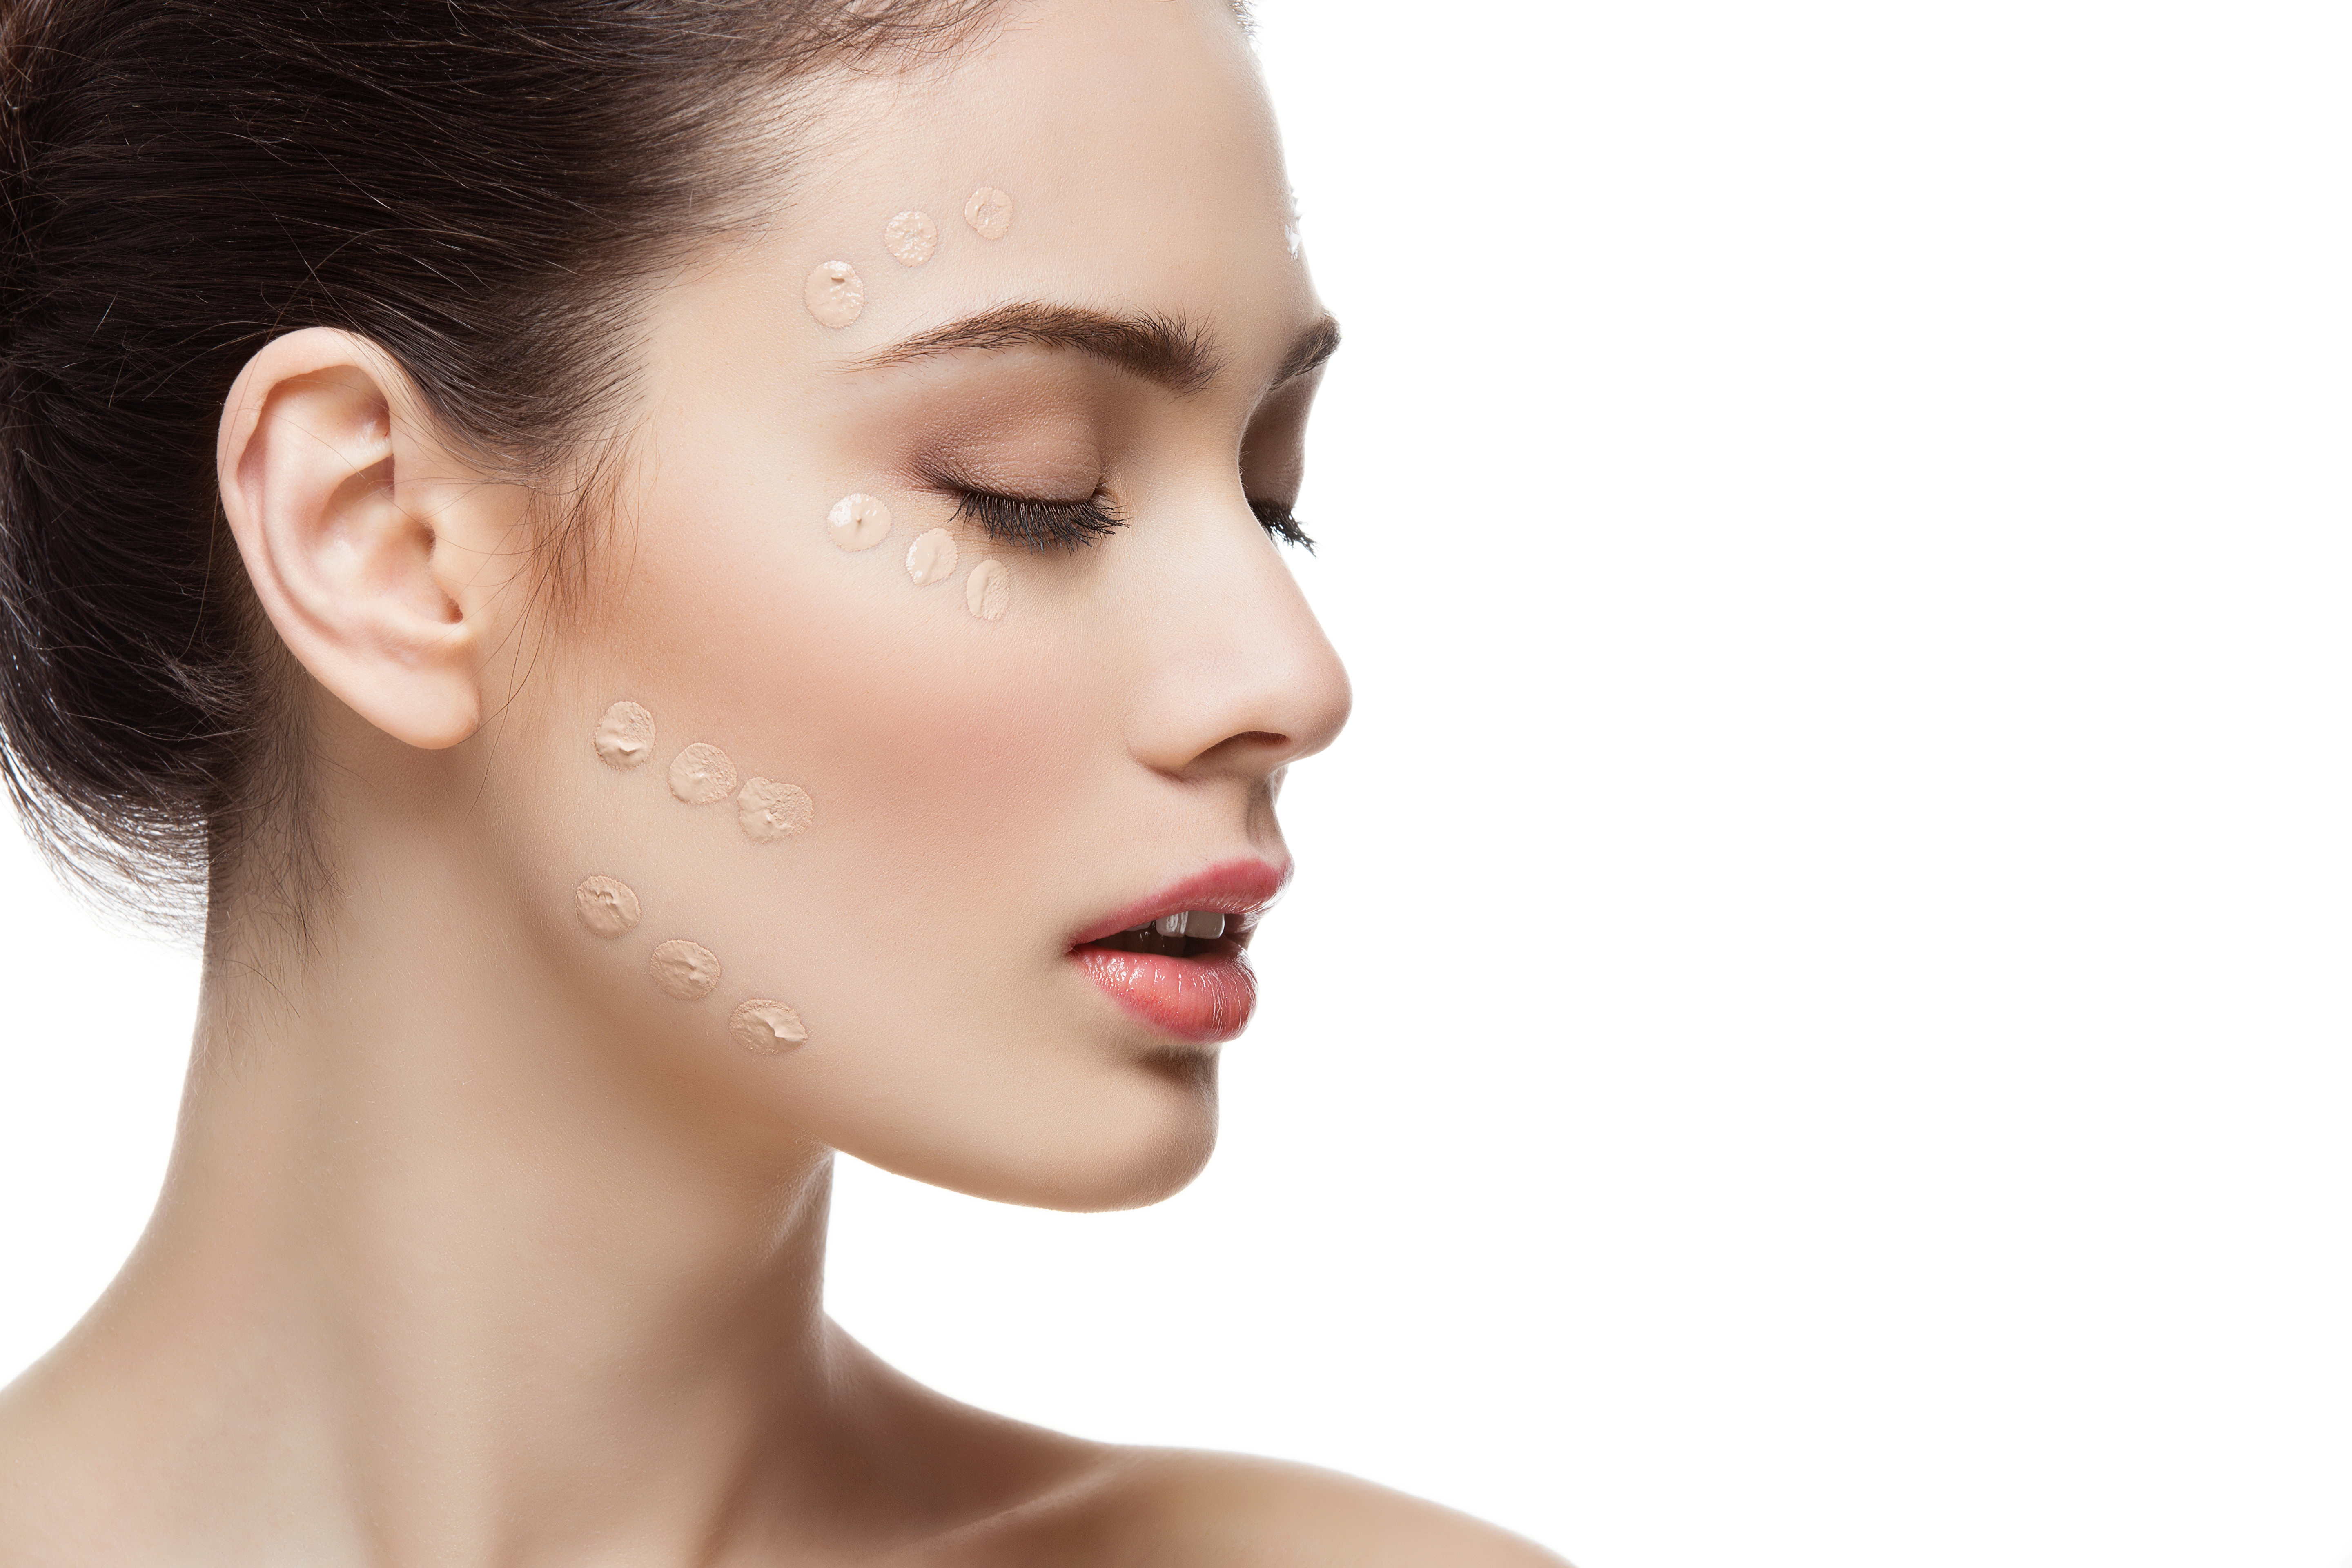 Cum îngrijești tenul și previi iritațiile pielii de la masca de protecție